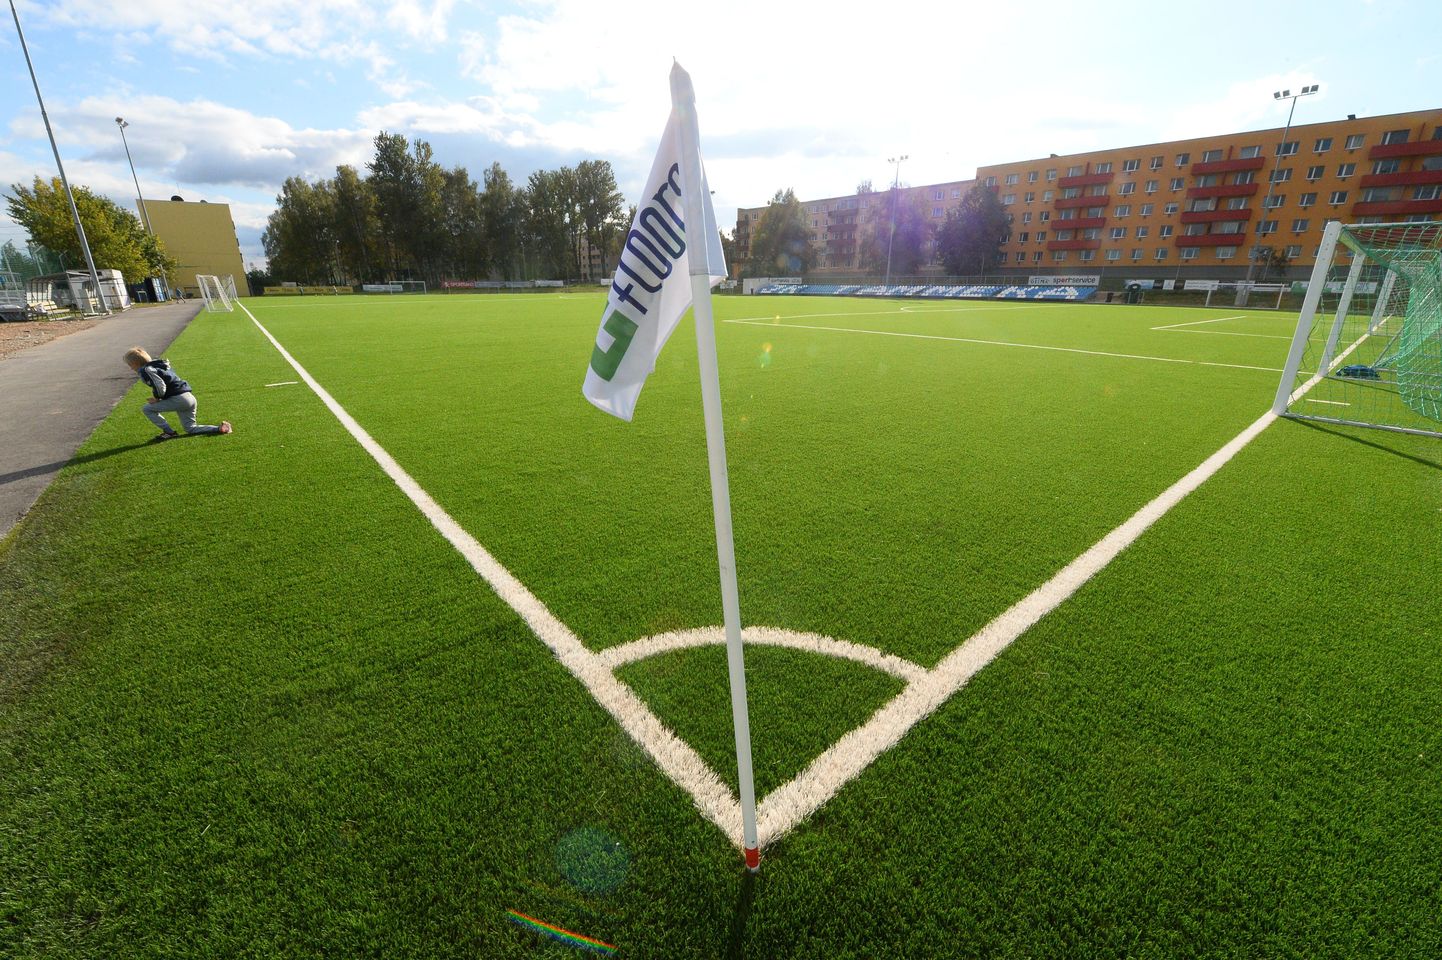 Sepa jalgpallikeskuses hakatakse selgitama Tartu jalgpallimeistreid.